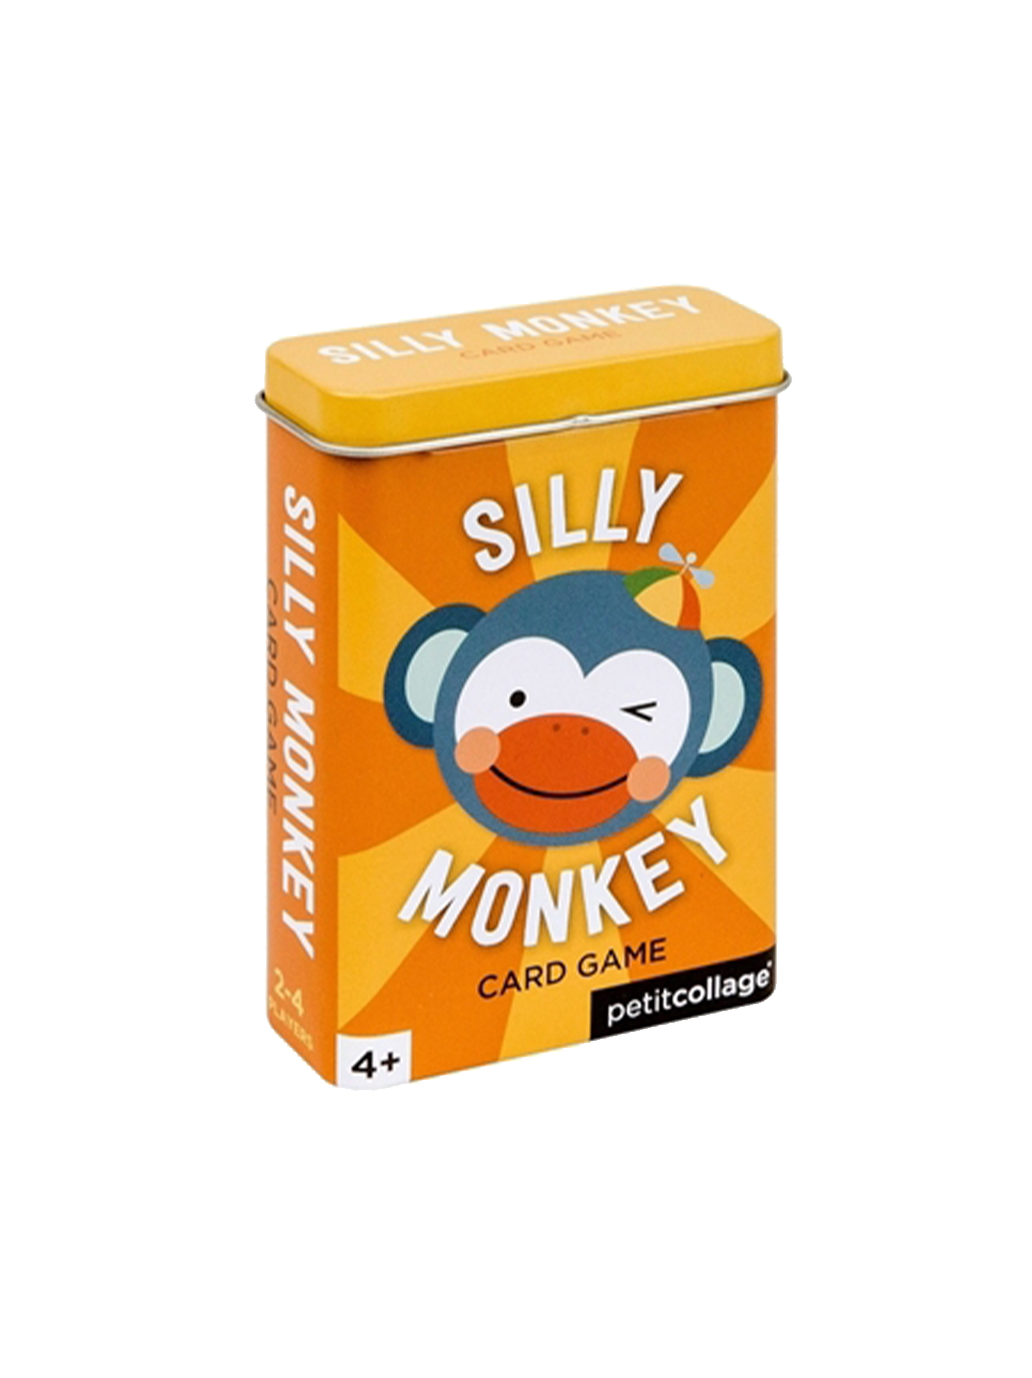 Das Kartenspiel Silly Monkey